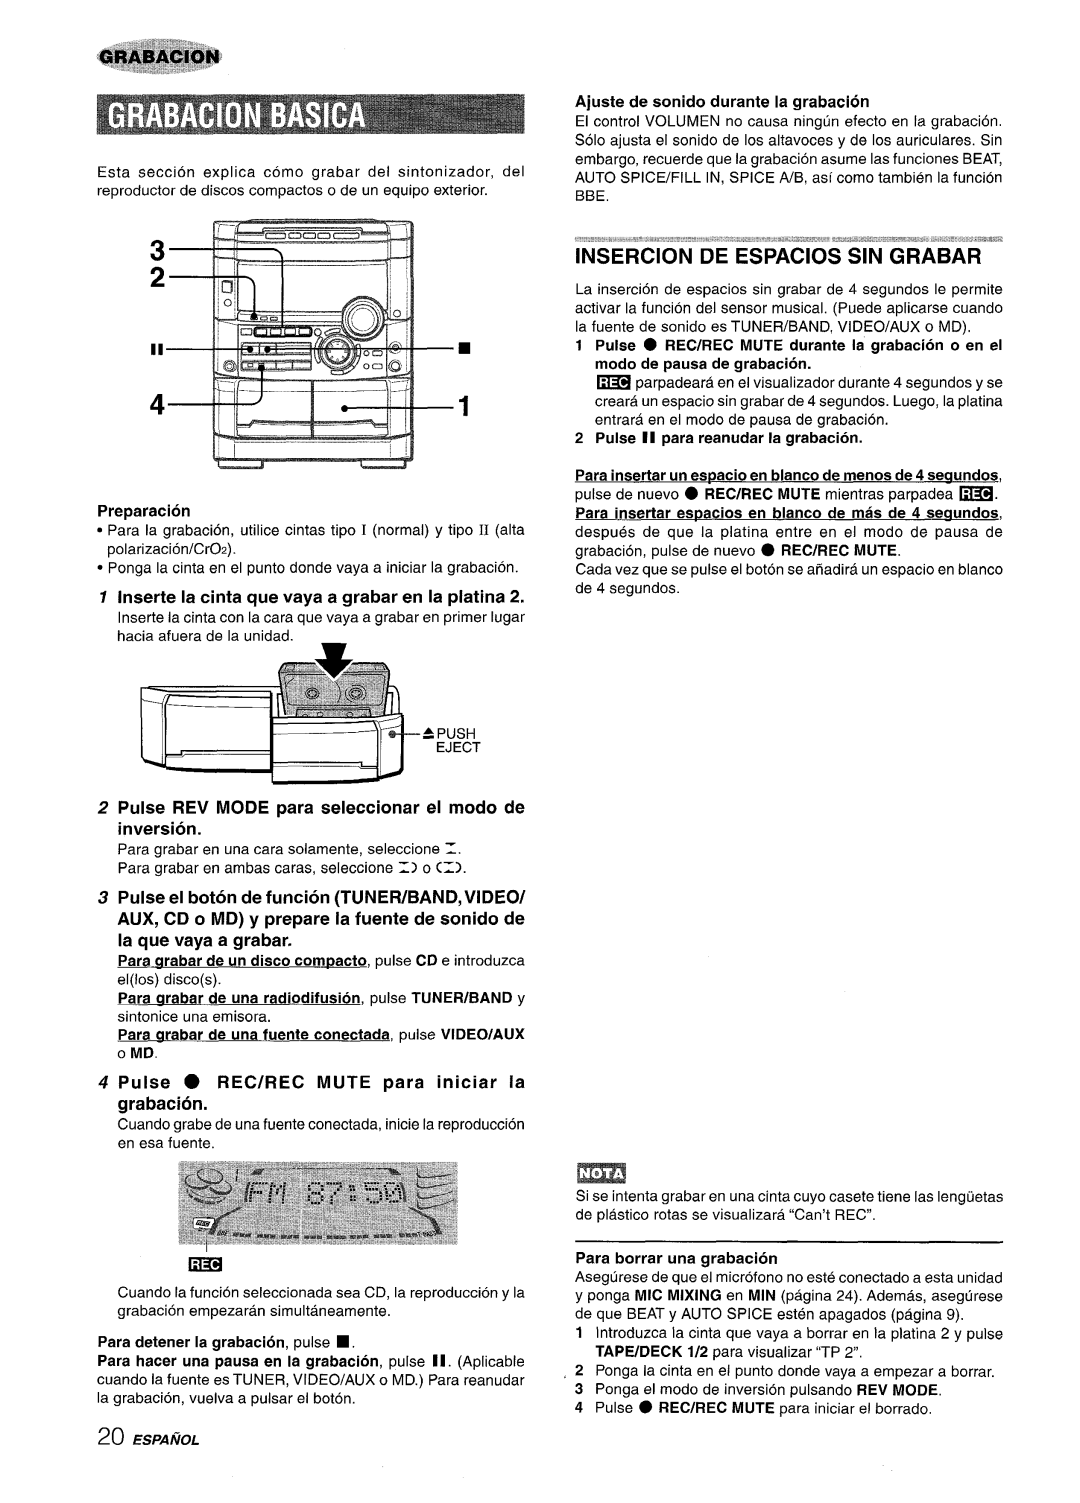 Sony NSX-A777 Insercion De Espacios Sin Grabar, Inserte la cinta que vaya a grabar en la platina, Preparation, Espa~Ol 